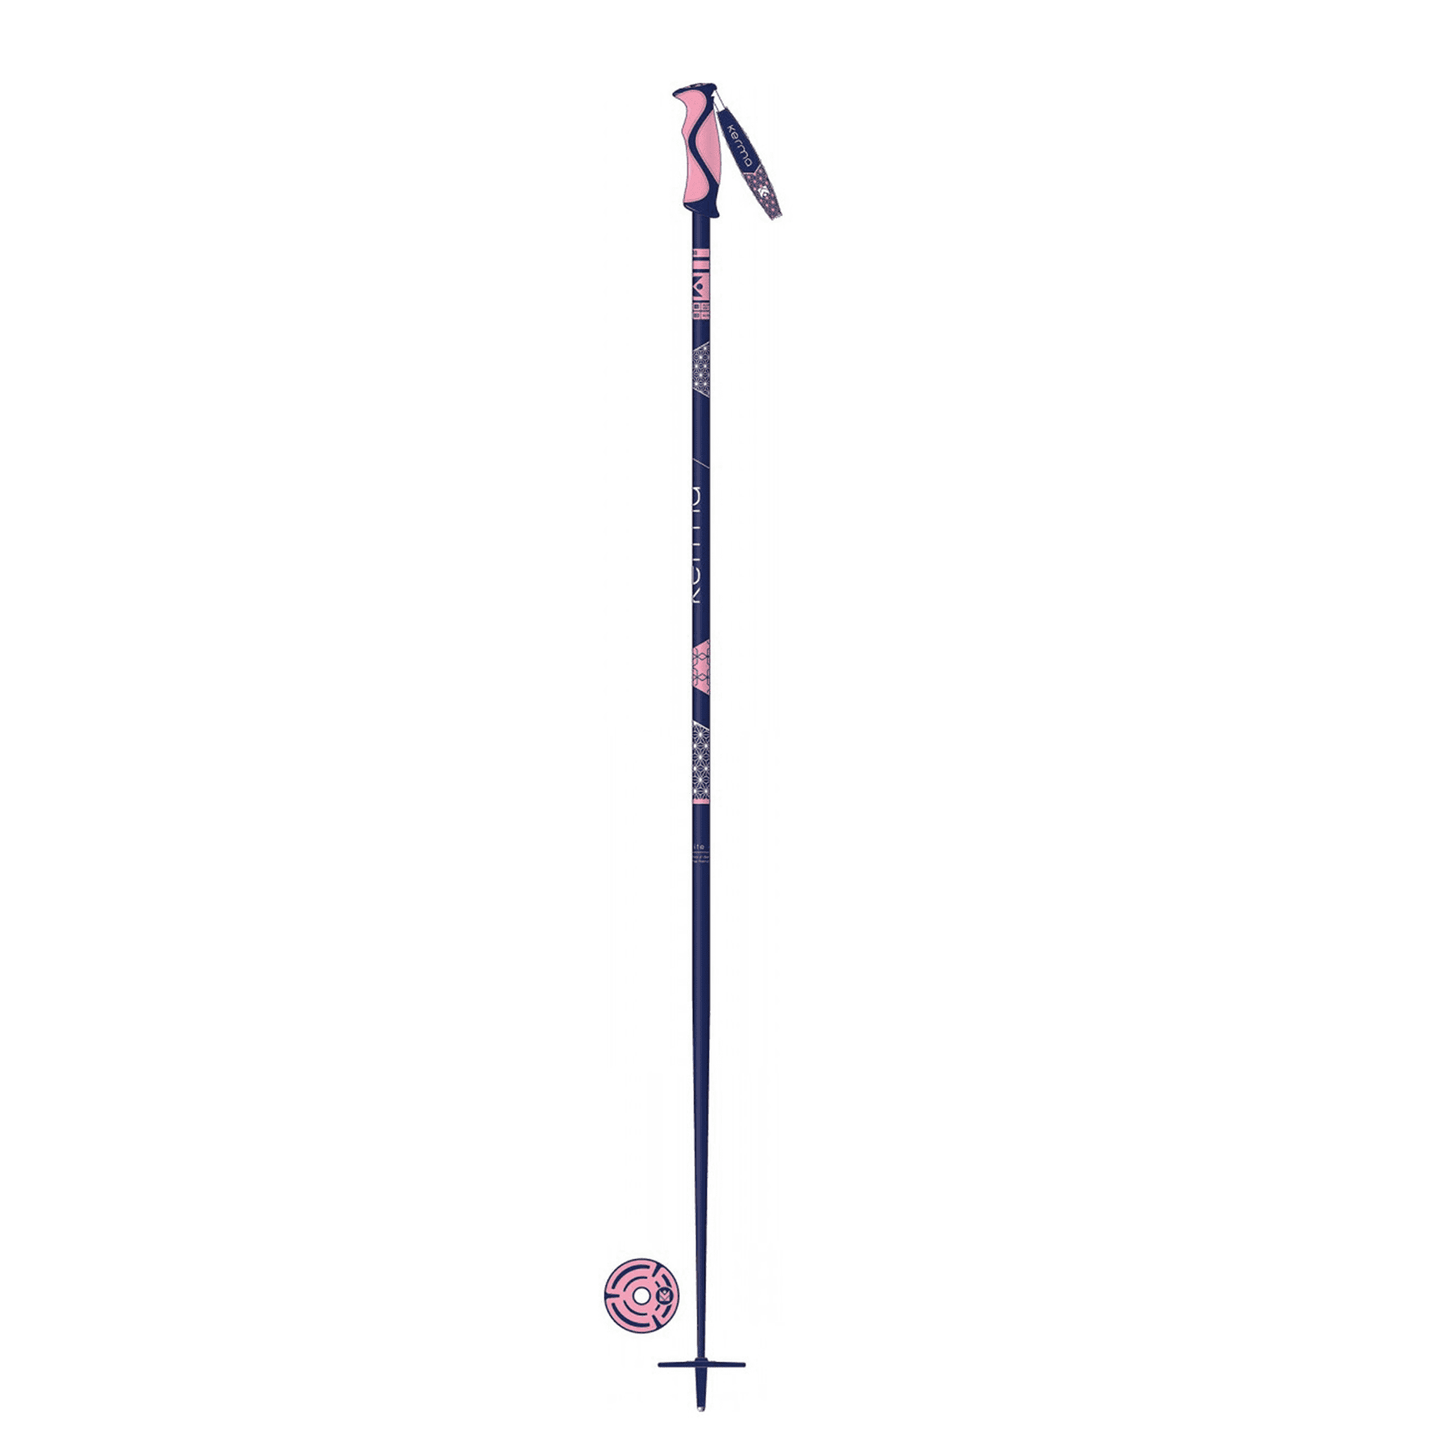 Kerma Elite Aluminium Women's Ski Pole